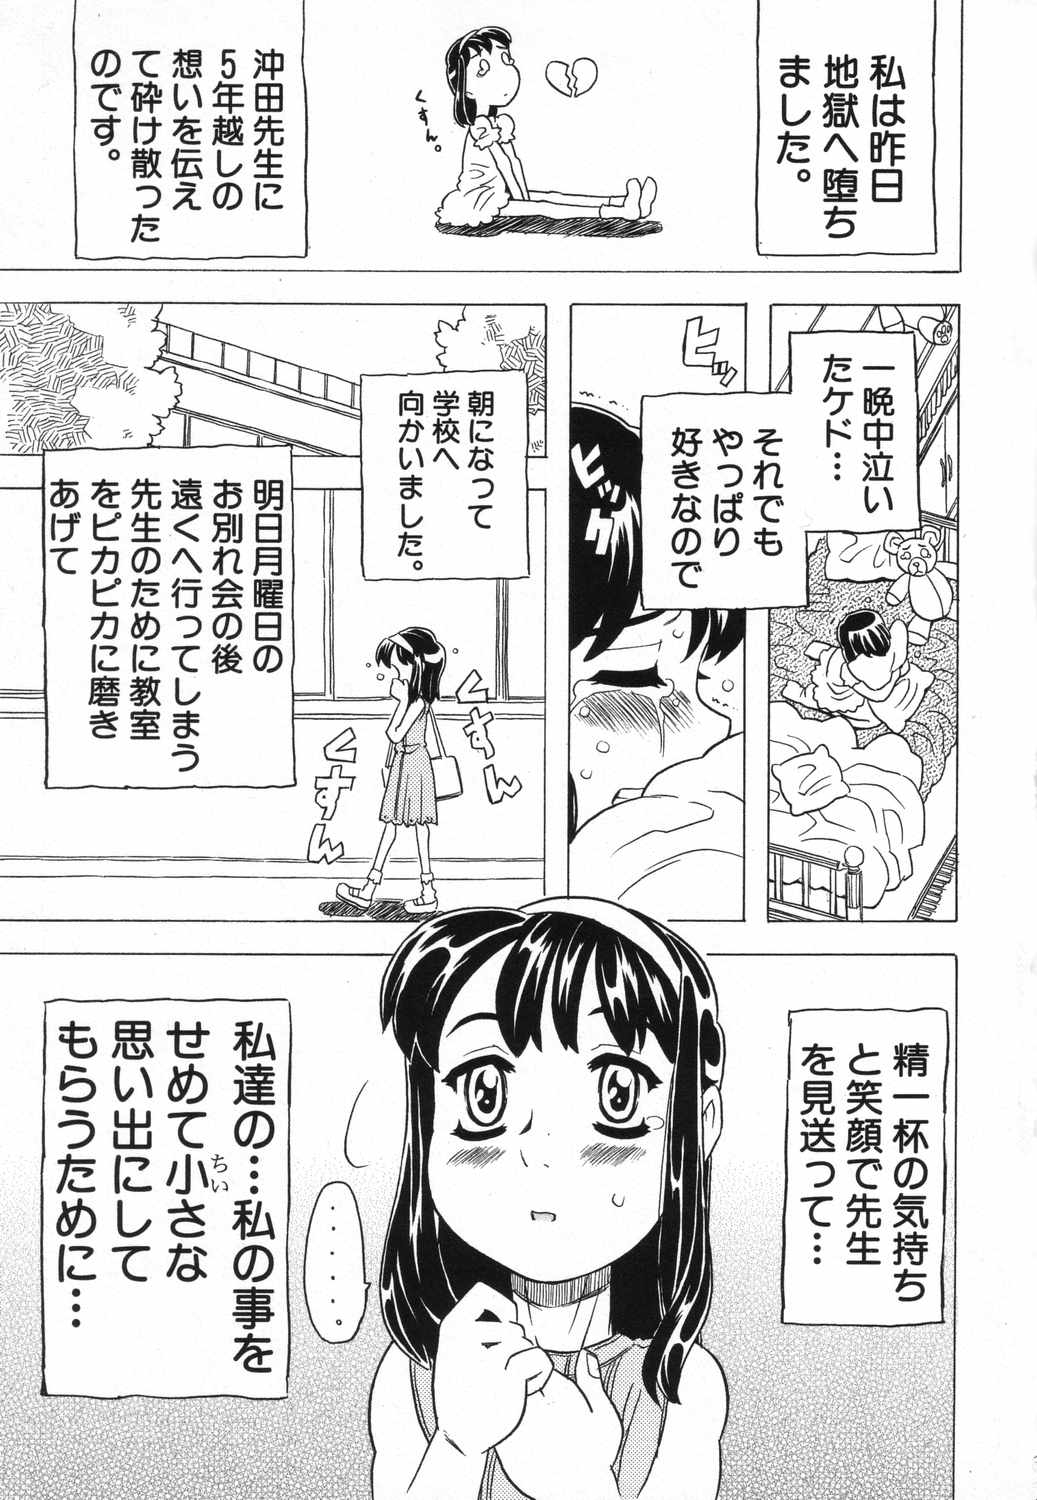 [Anthology] LOCO vol.5 Aki no Omorashi Musume Tokushuu page 8 full